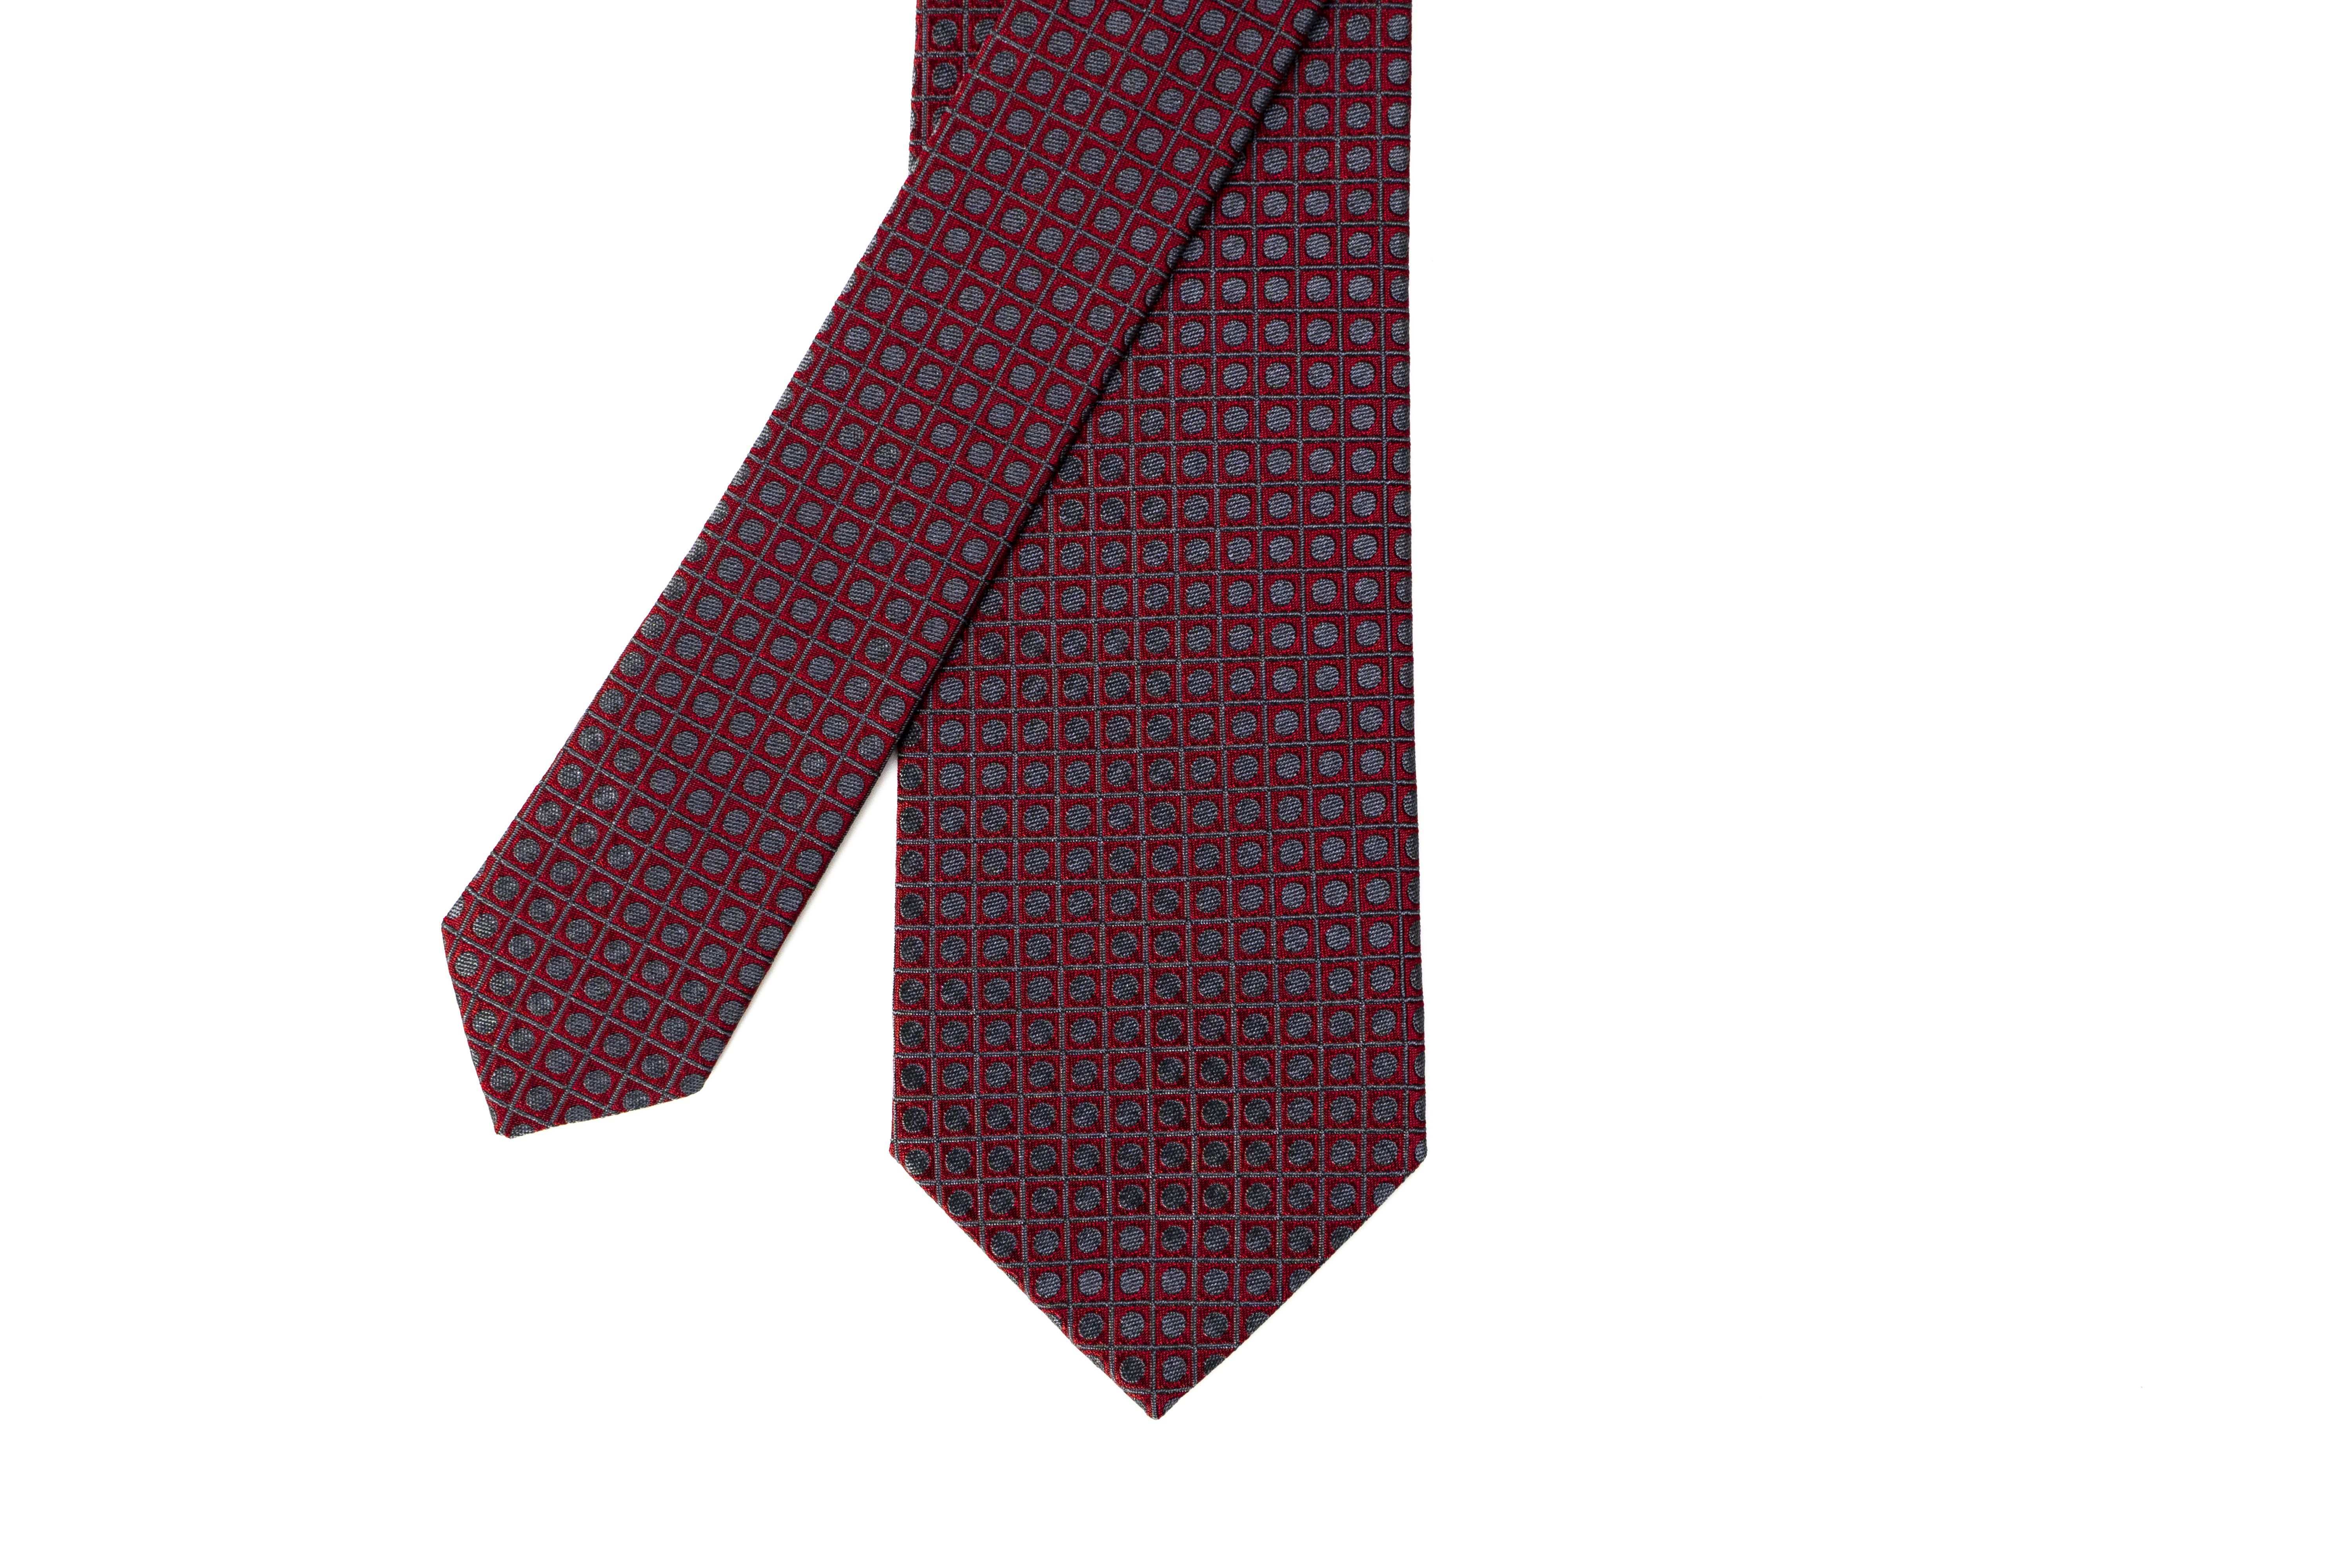 Chiccheria Brand Silk Tie Silk Tie Men S Menswear Fall Winter 2018 Fashion Casual Street Style Outfits Trends Desi Seide Seidenkrawatte Krawatte